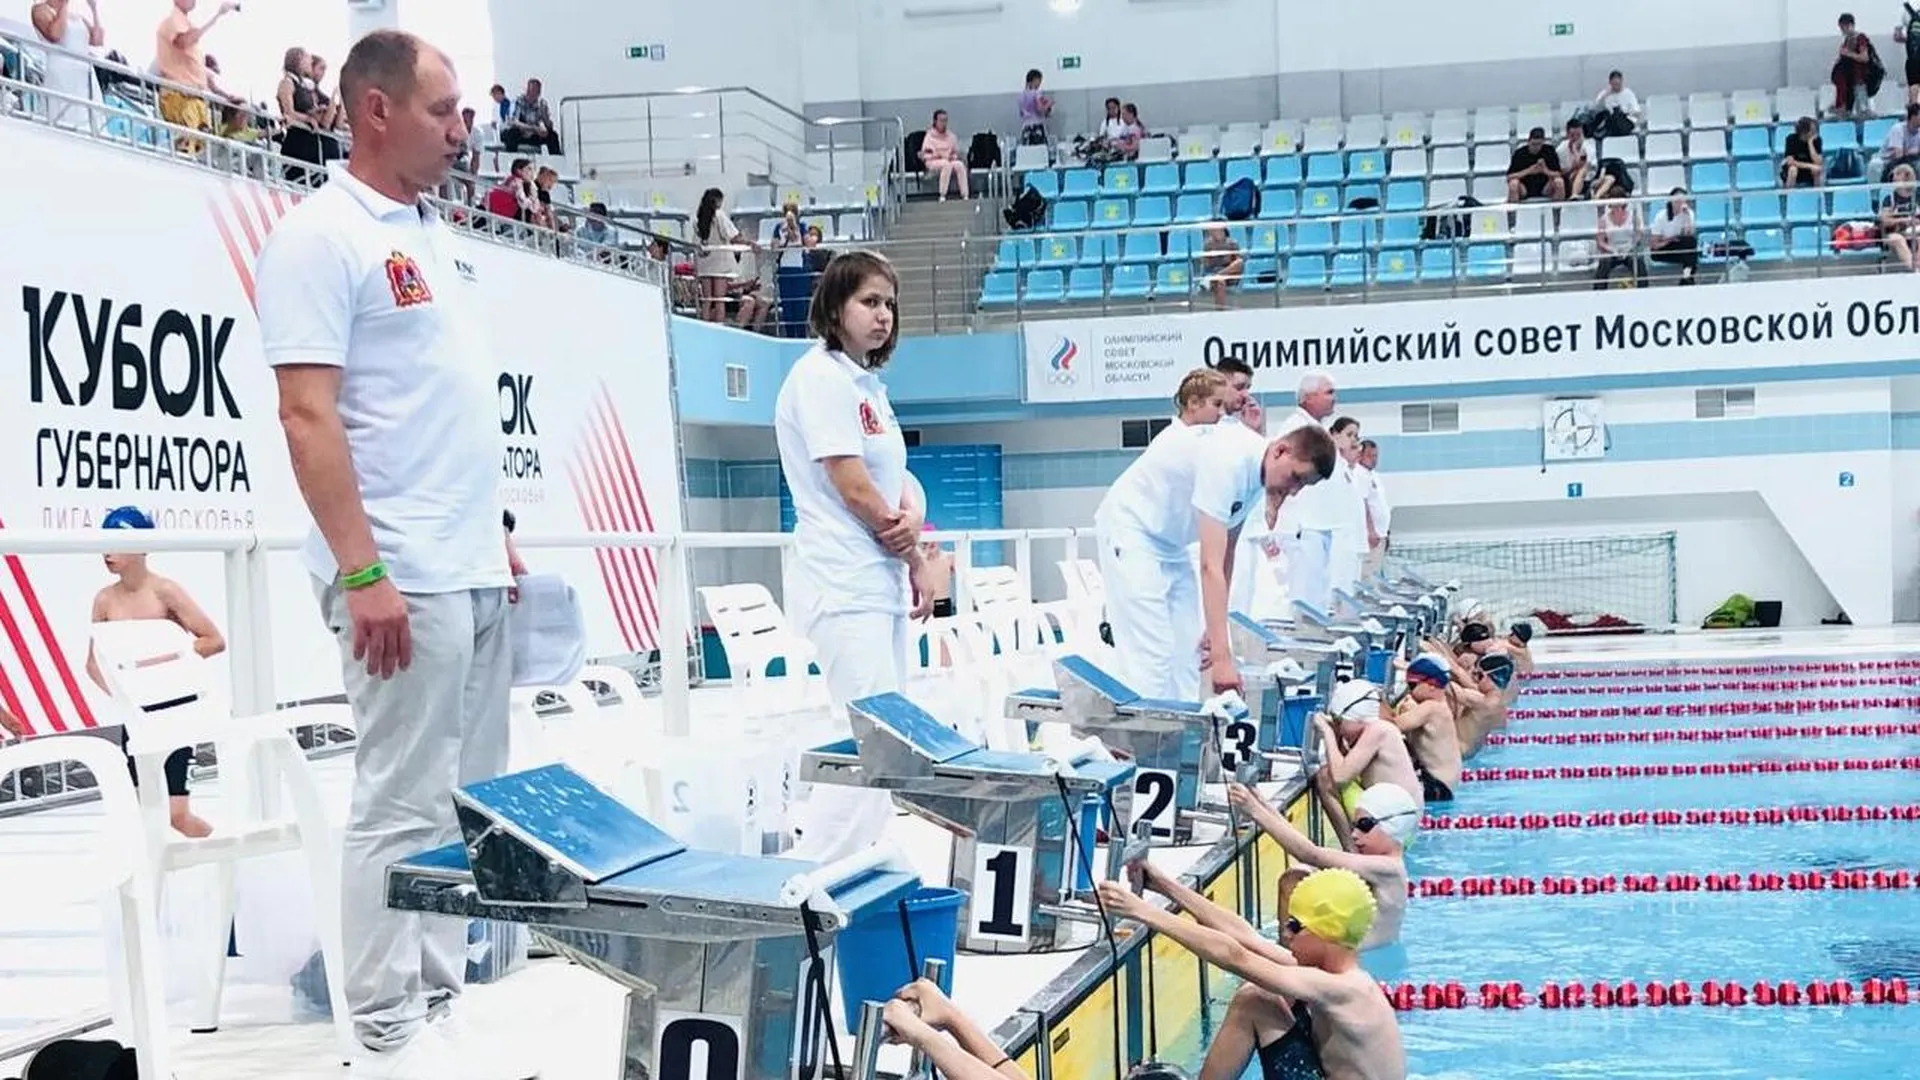 Пловцы из Дубны выиграли Кубок губернатора Московской области